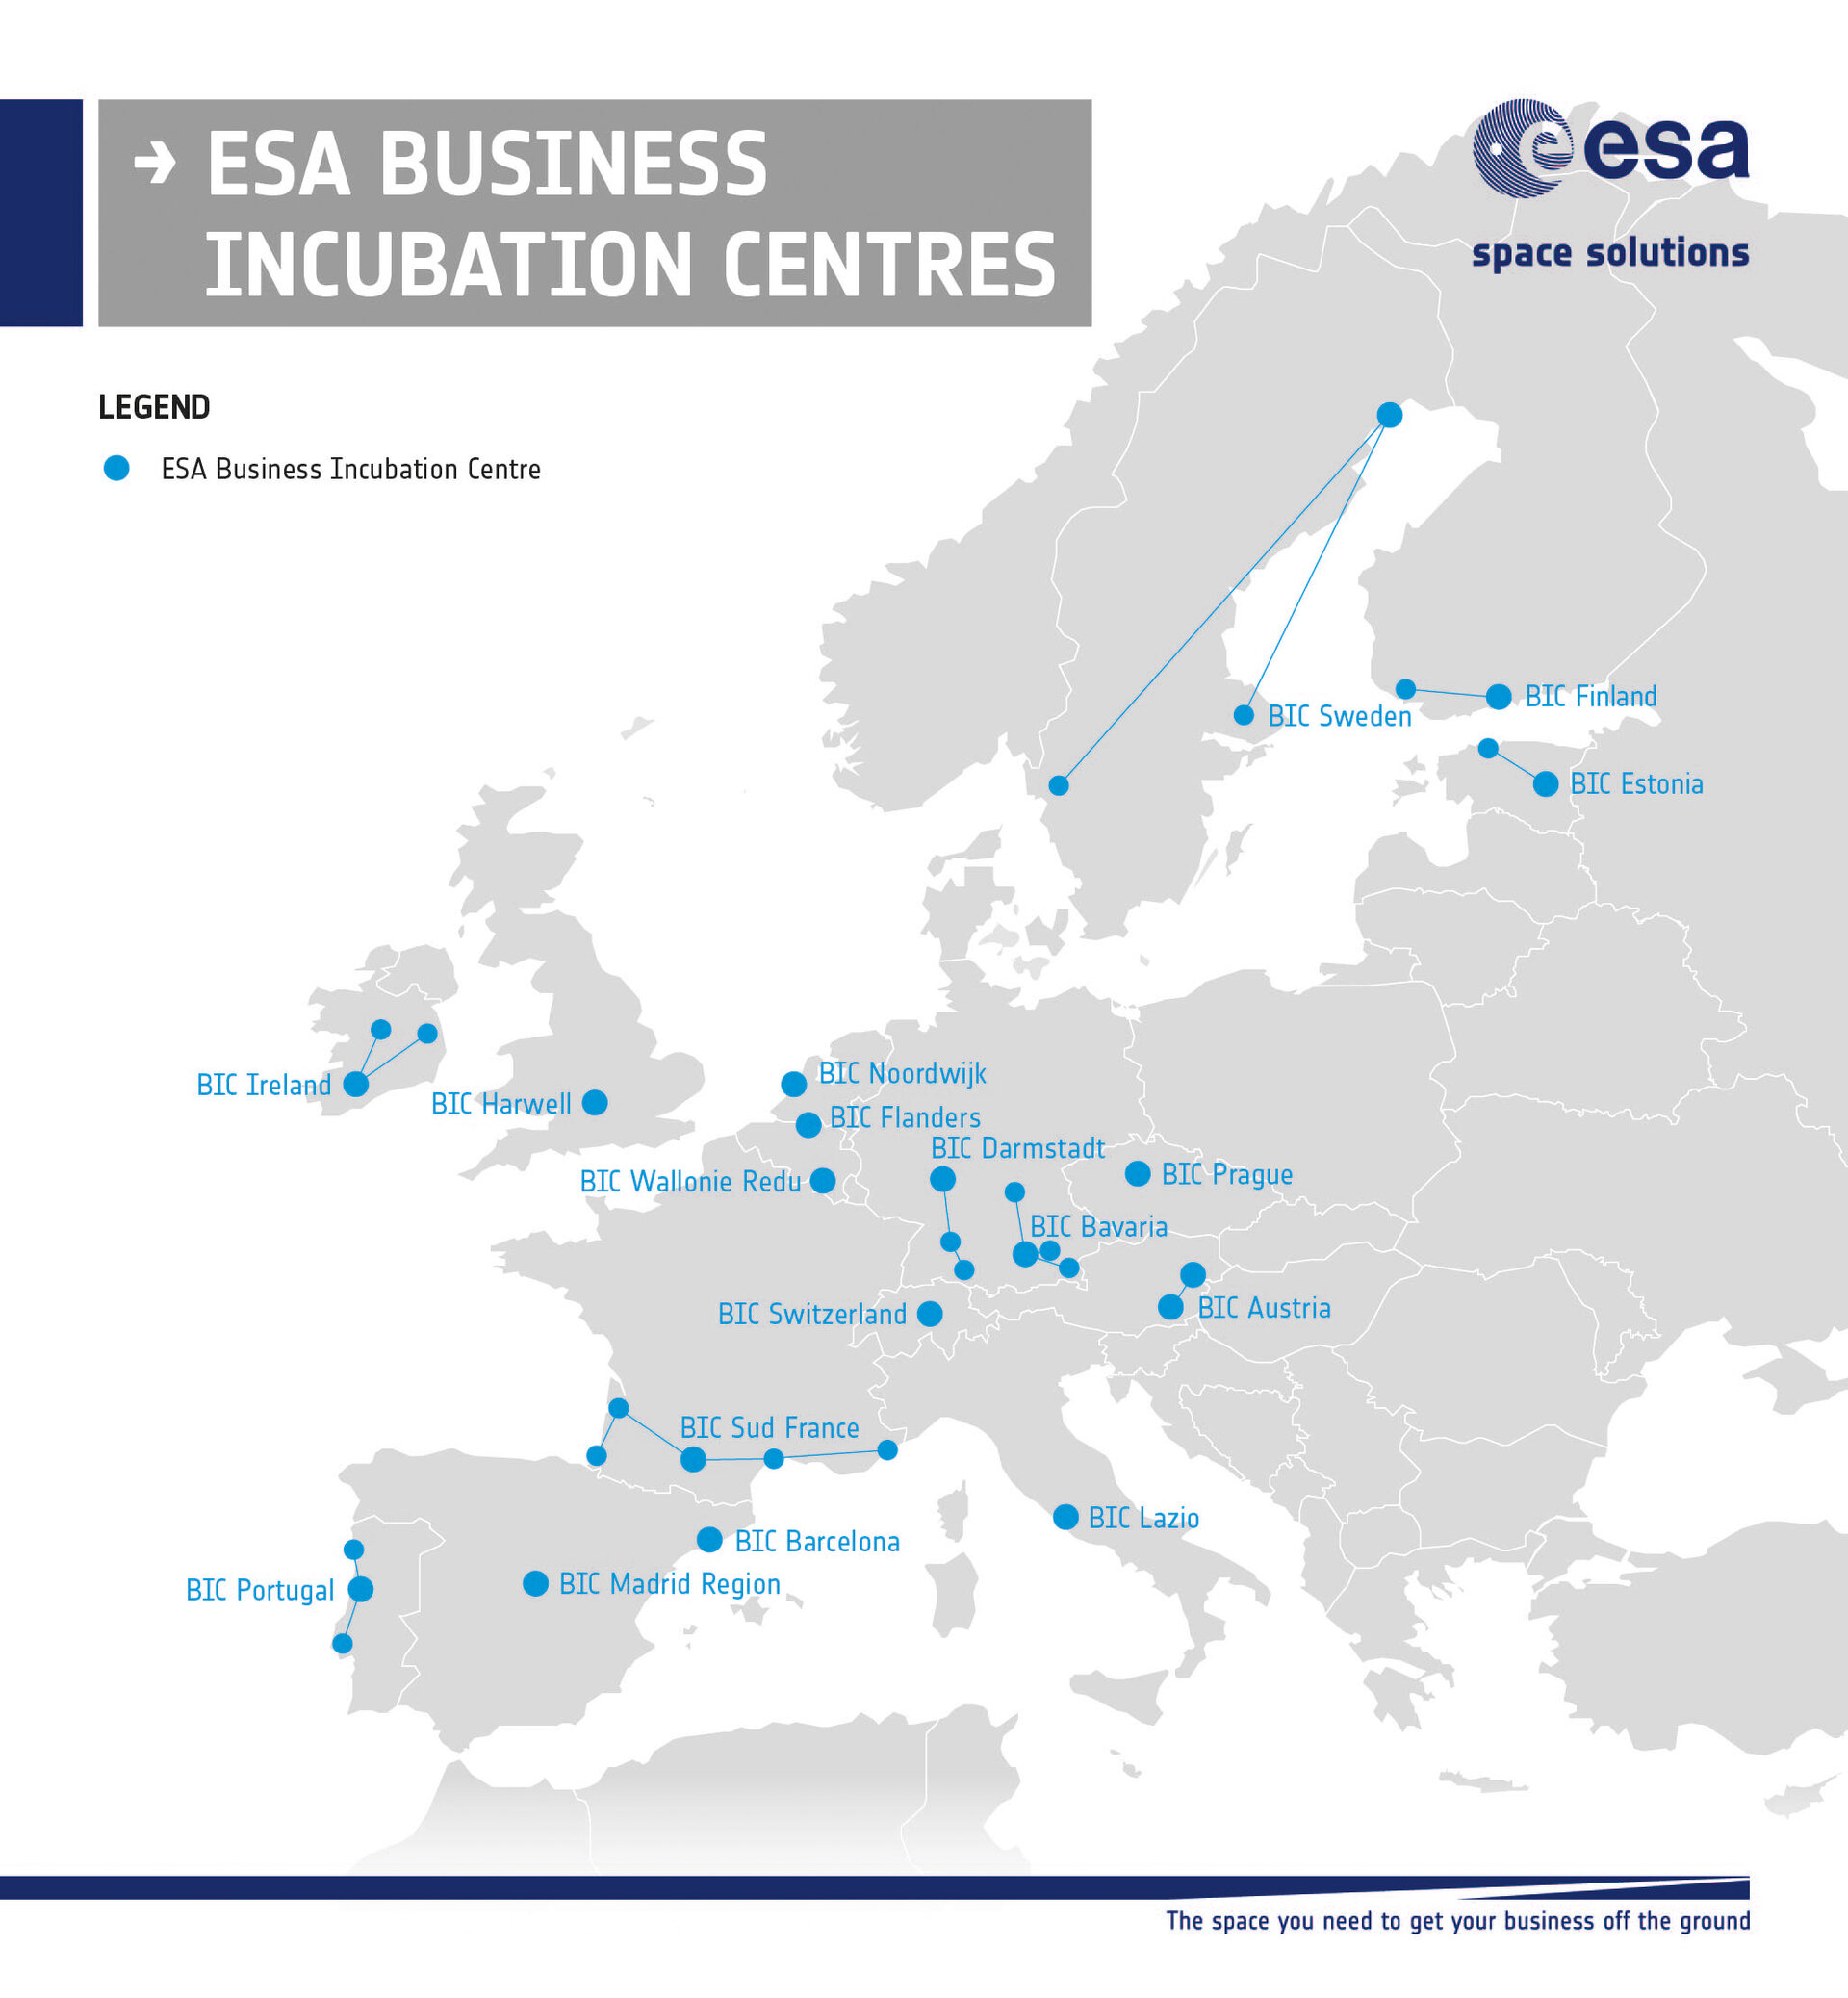 ESA BICs